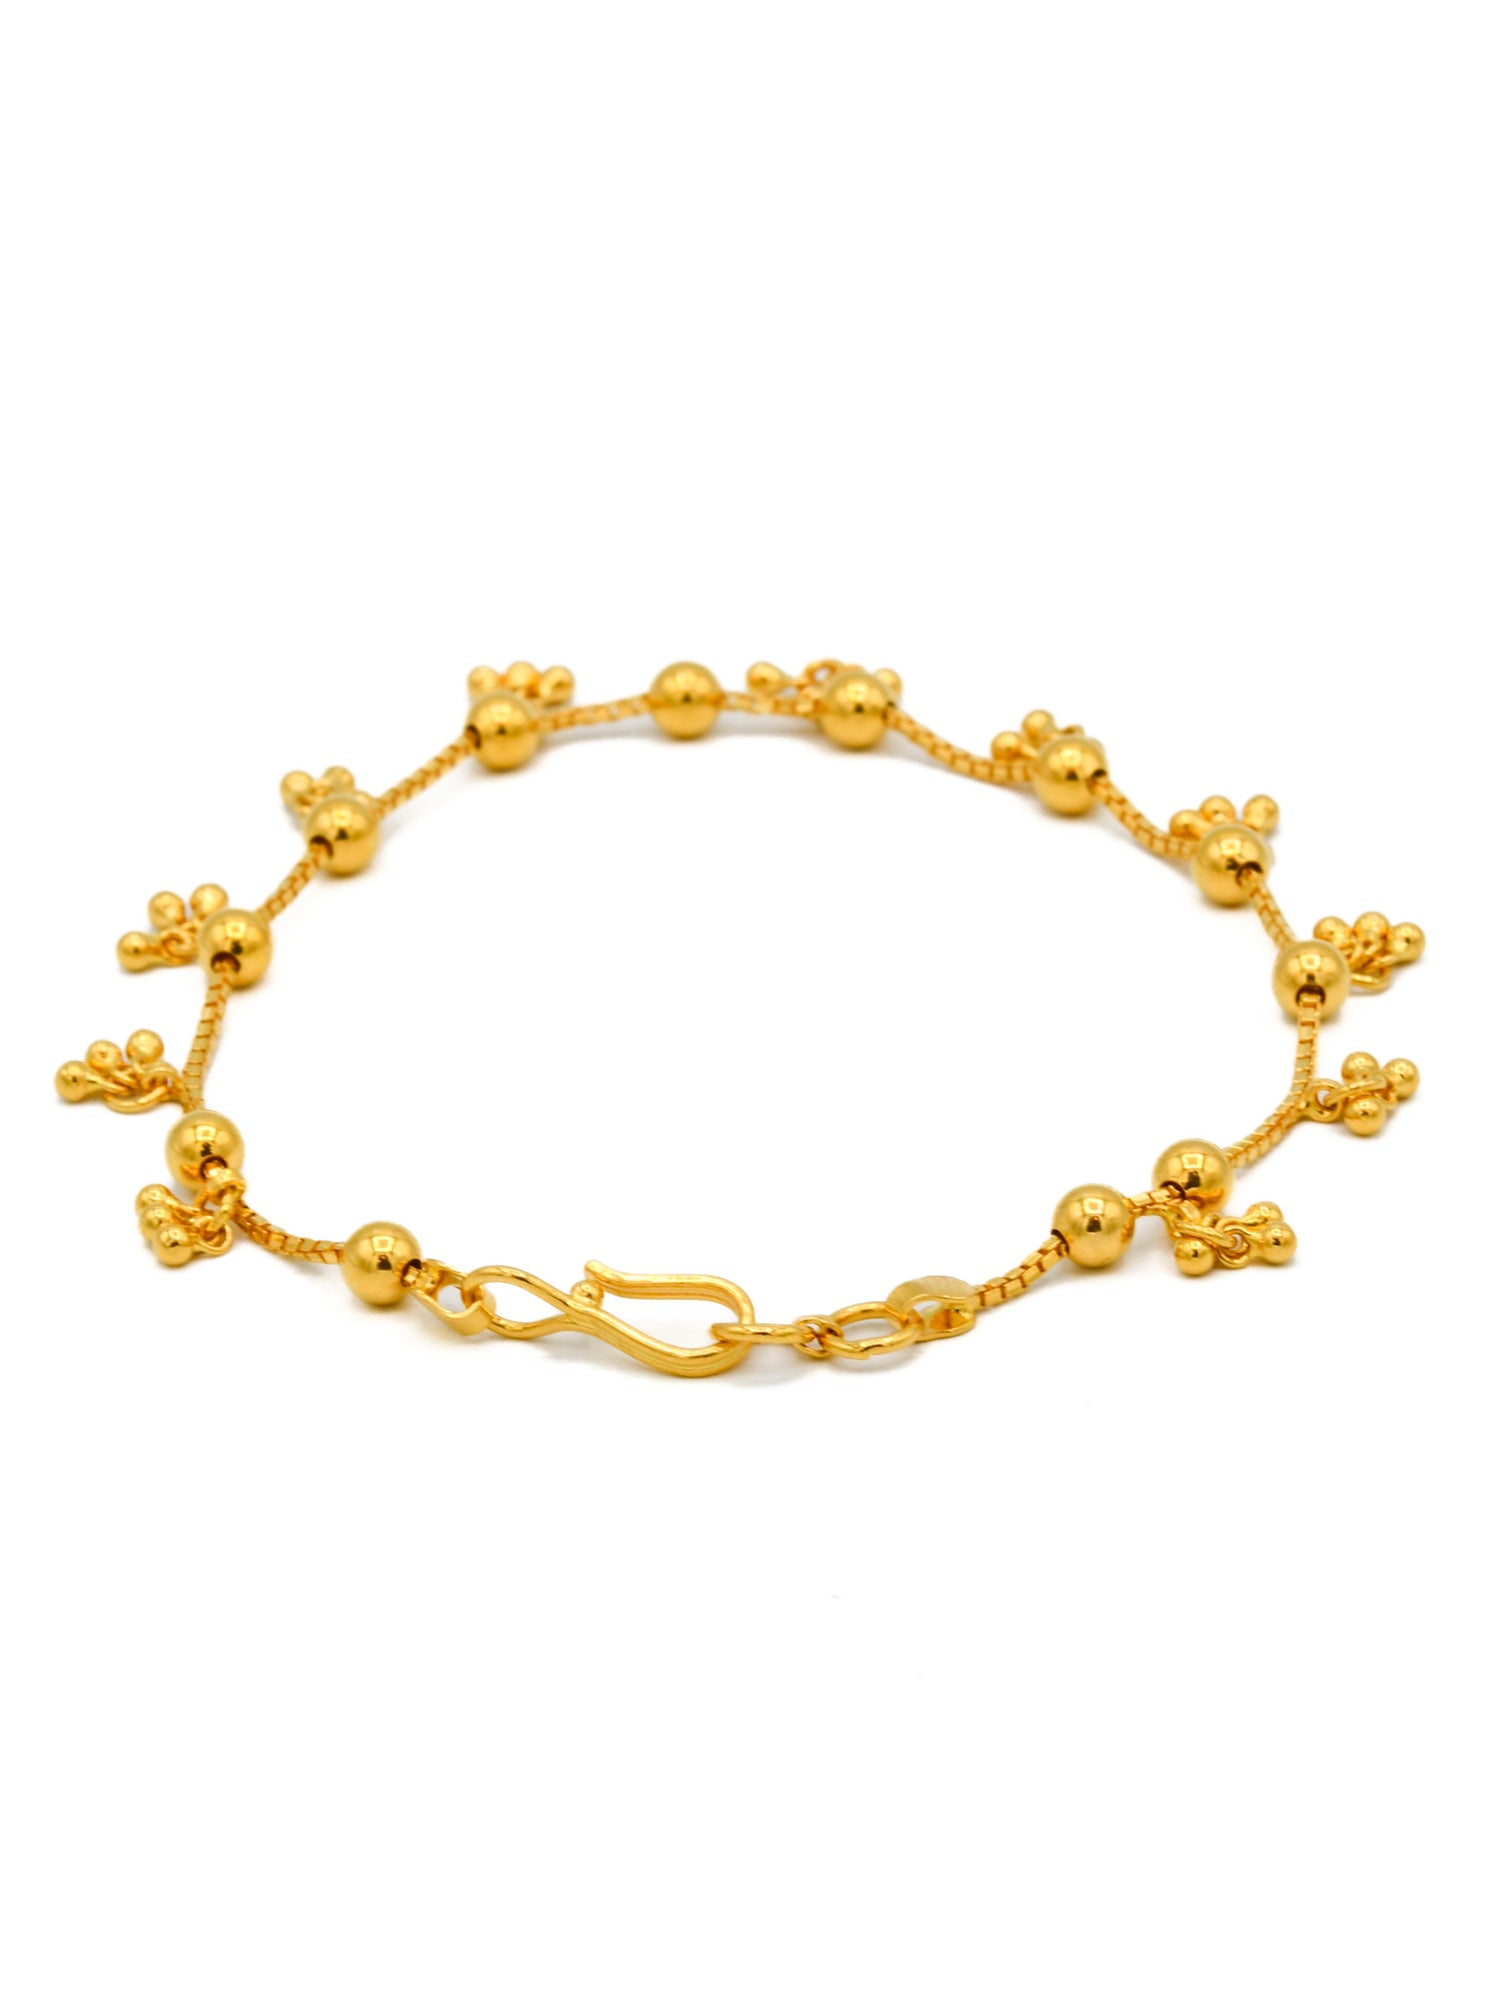 22ct Gold Charms Ladies Bracelet - Roop Darshan